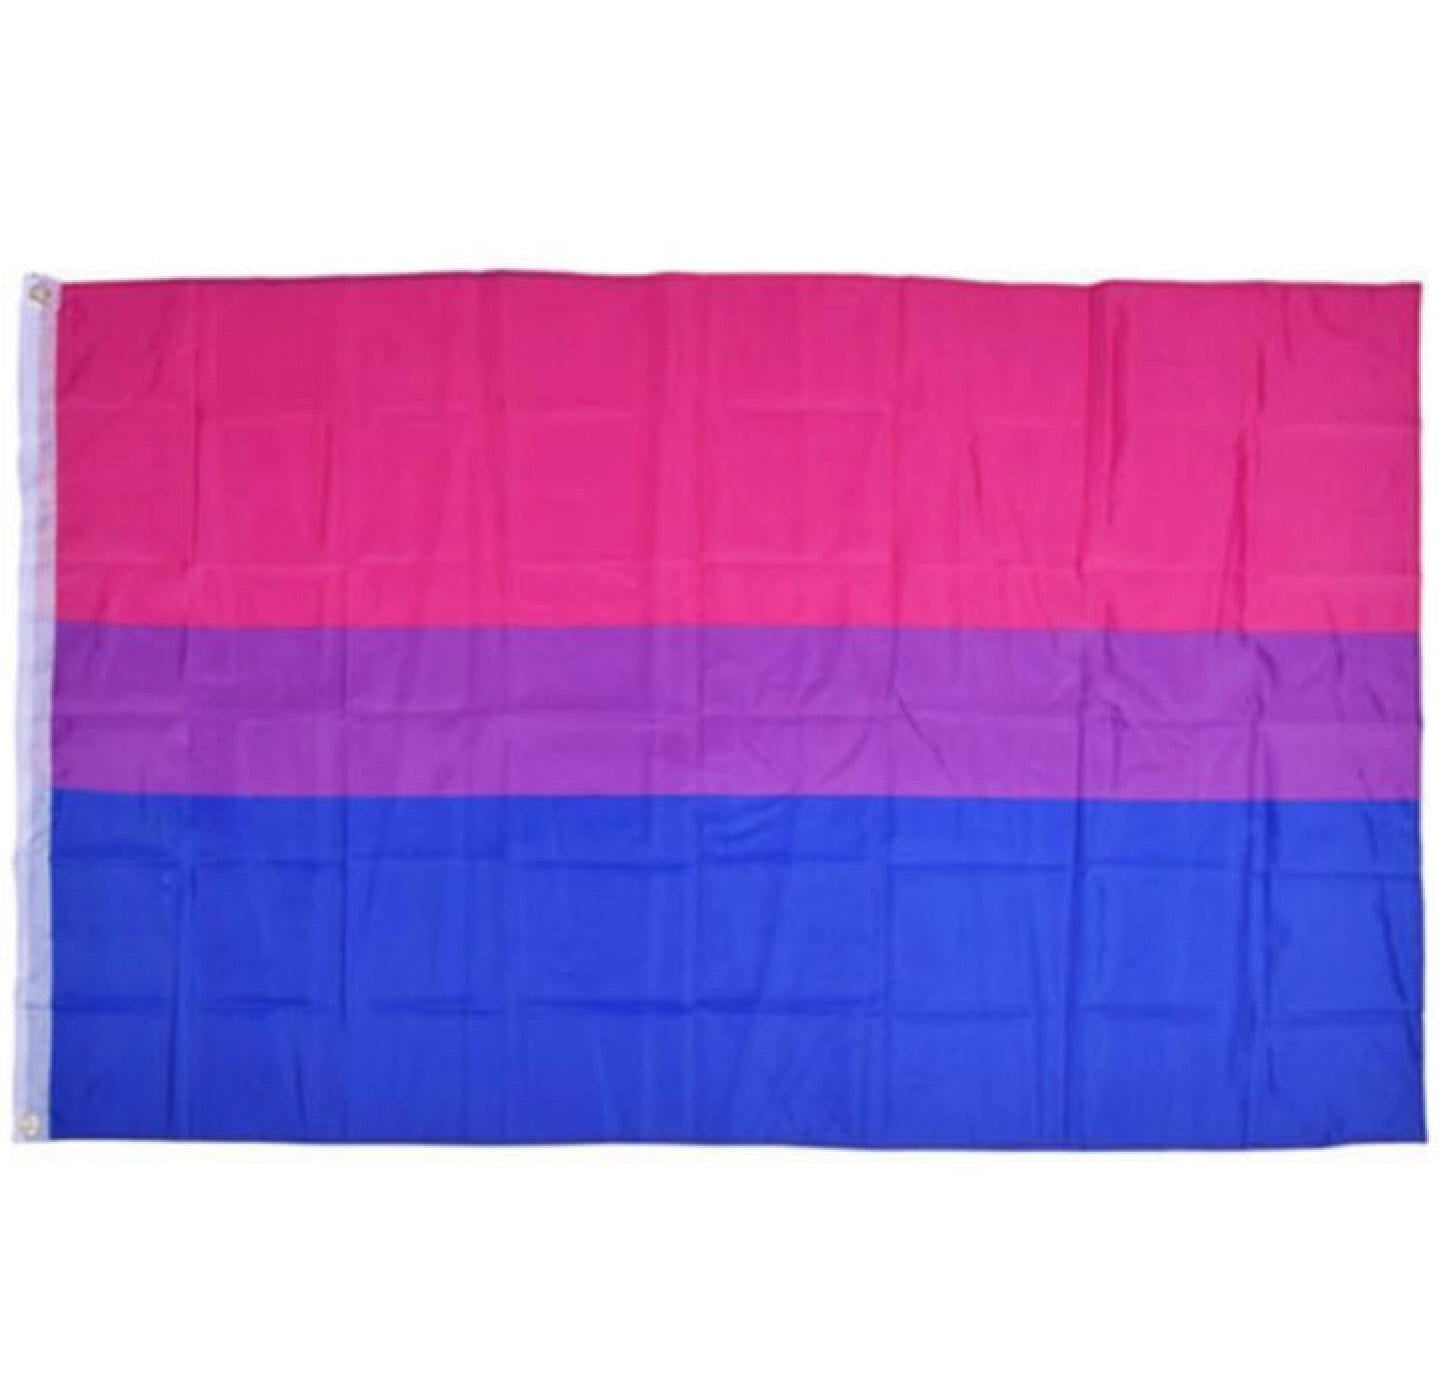 Bisexual Flag 150 x 90cm